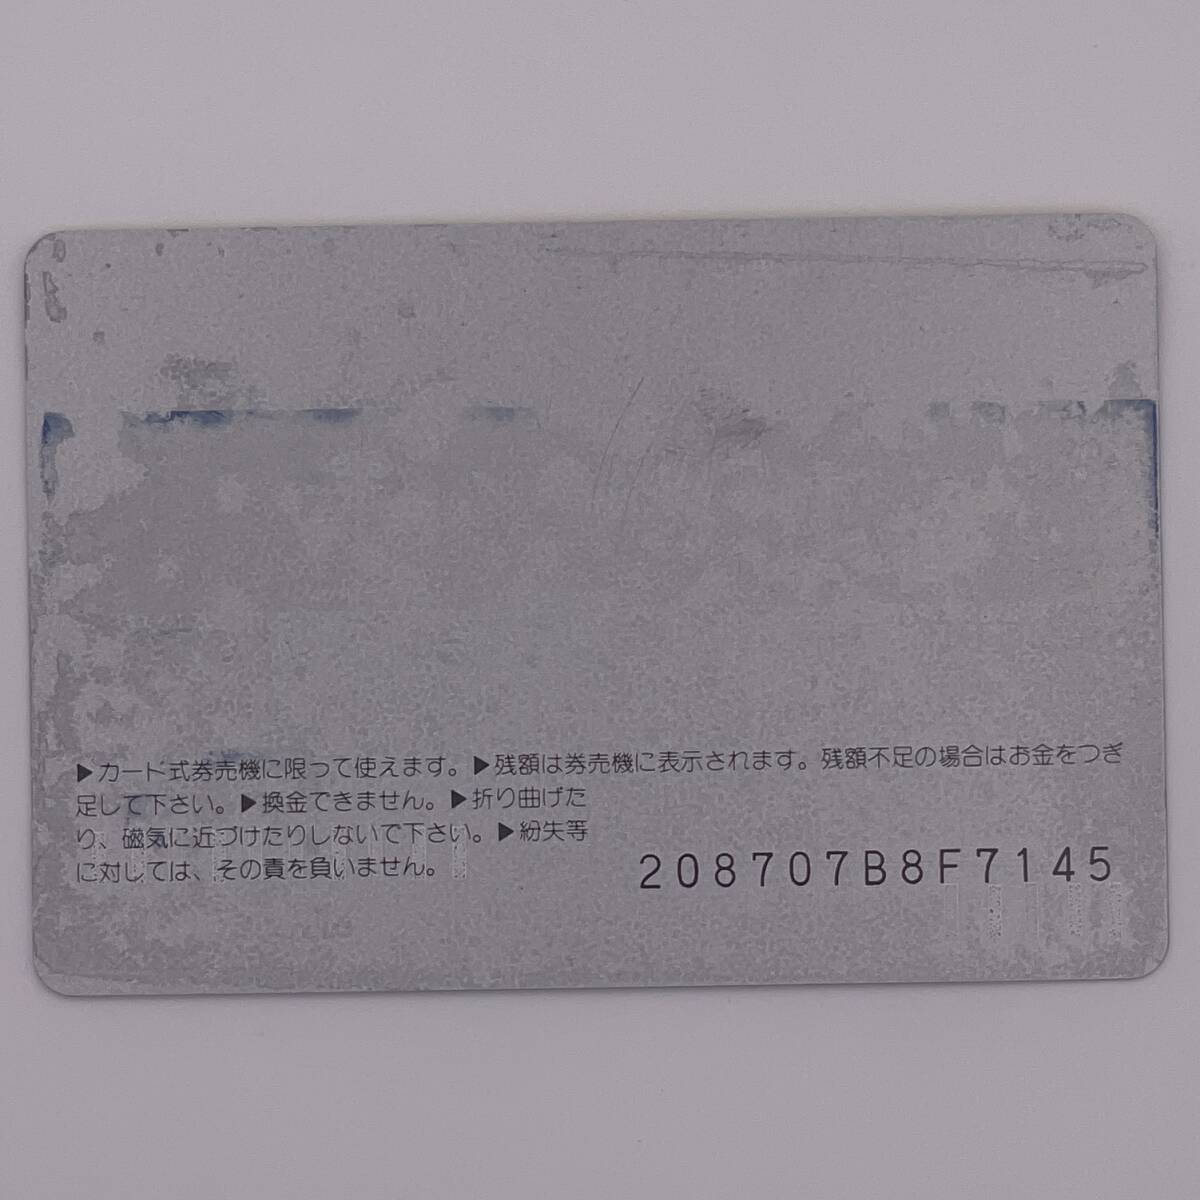 オレンジカード 恋路パスポート 逢えるかもしれない… 松波から恋路ゆき JR西日本 1000円 未使用_画像2